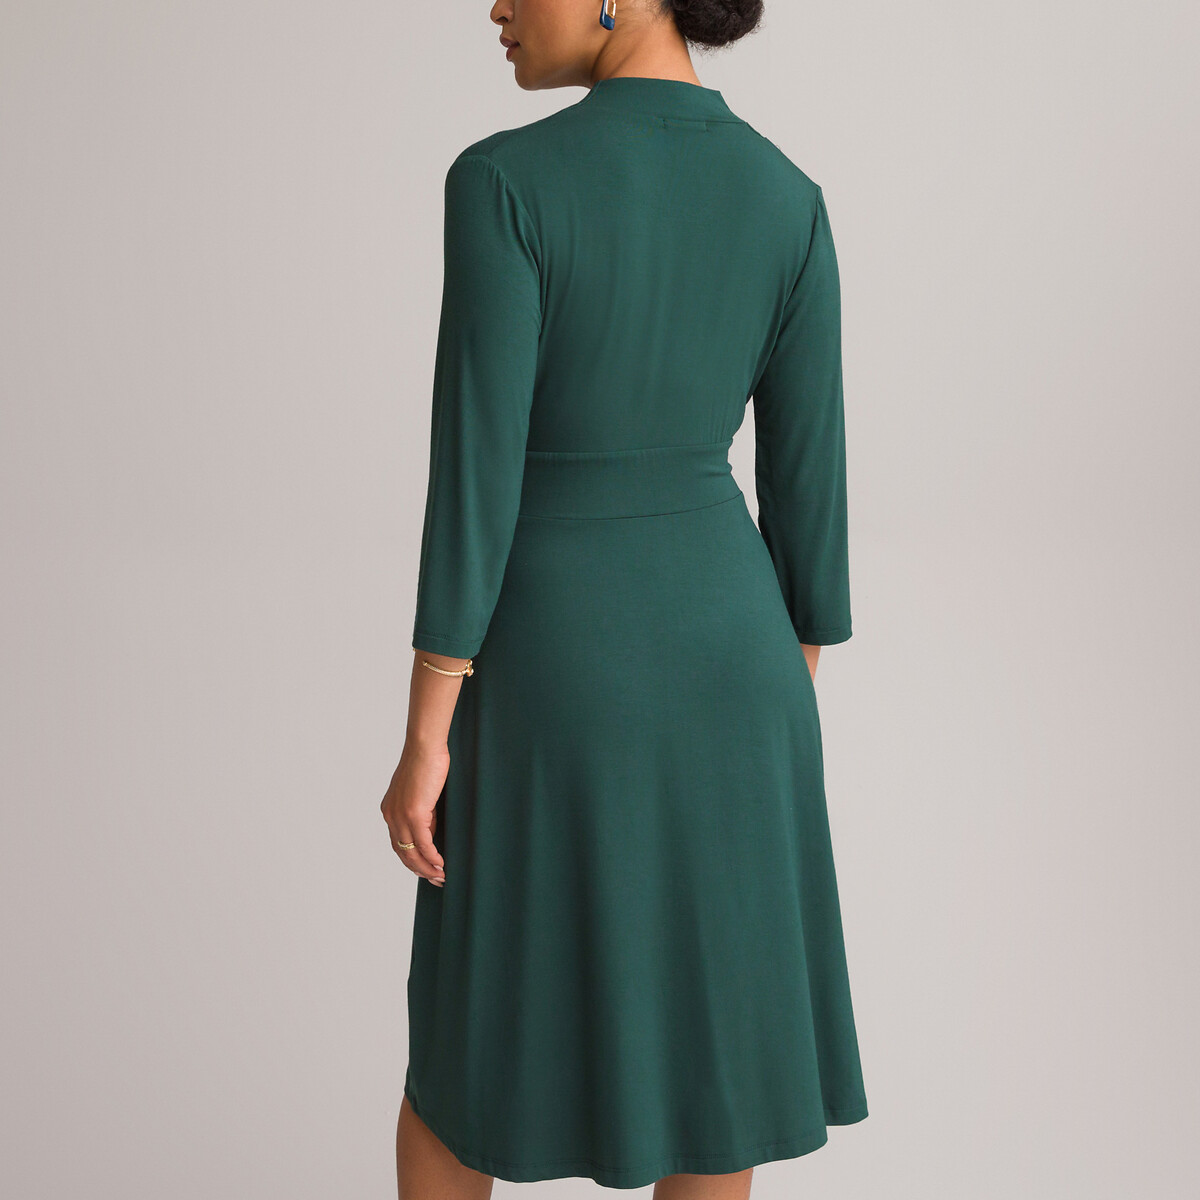 Платье ANNE WEYBURN Платье Расклешенное из струящегося трикотажа с рукавами 34 42 зеленый, размер 42 - фото 4